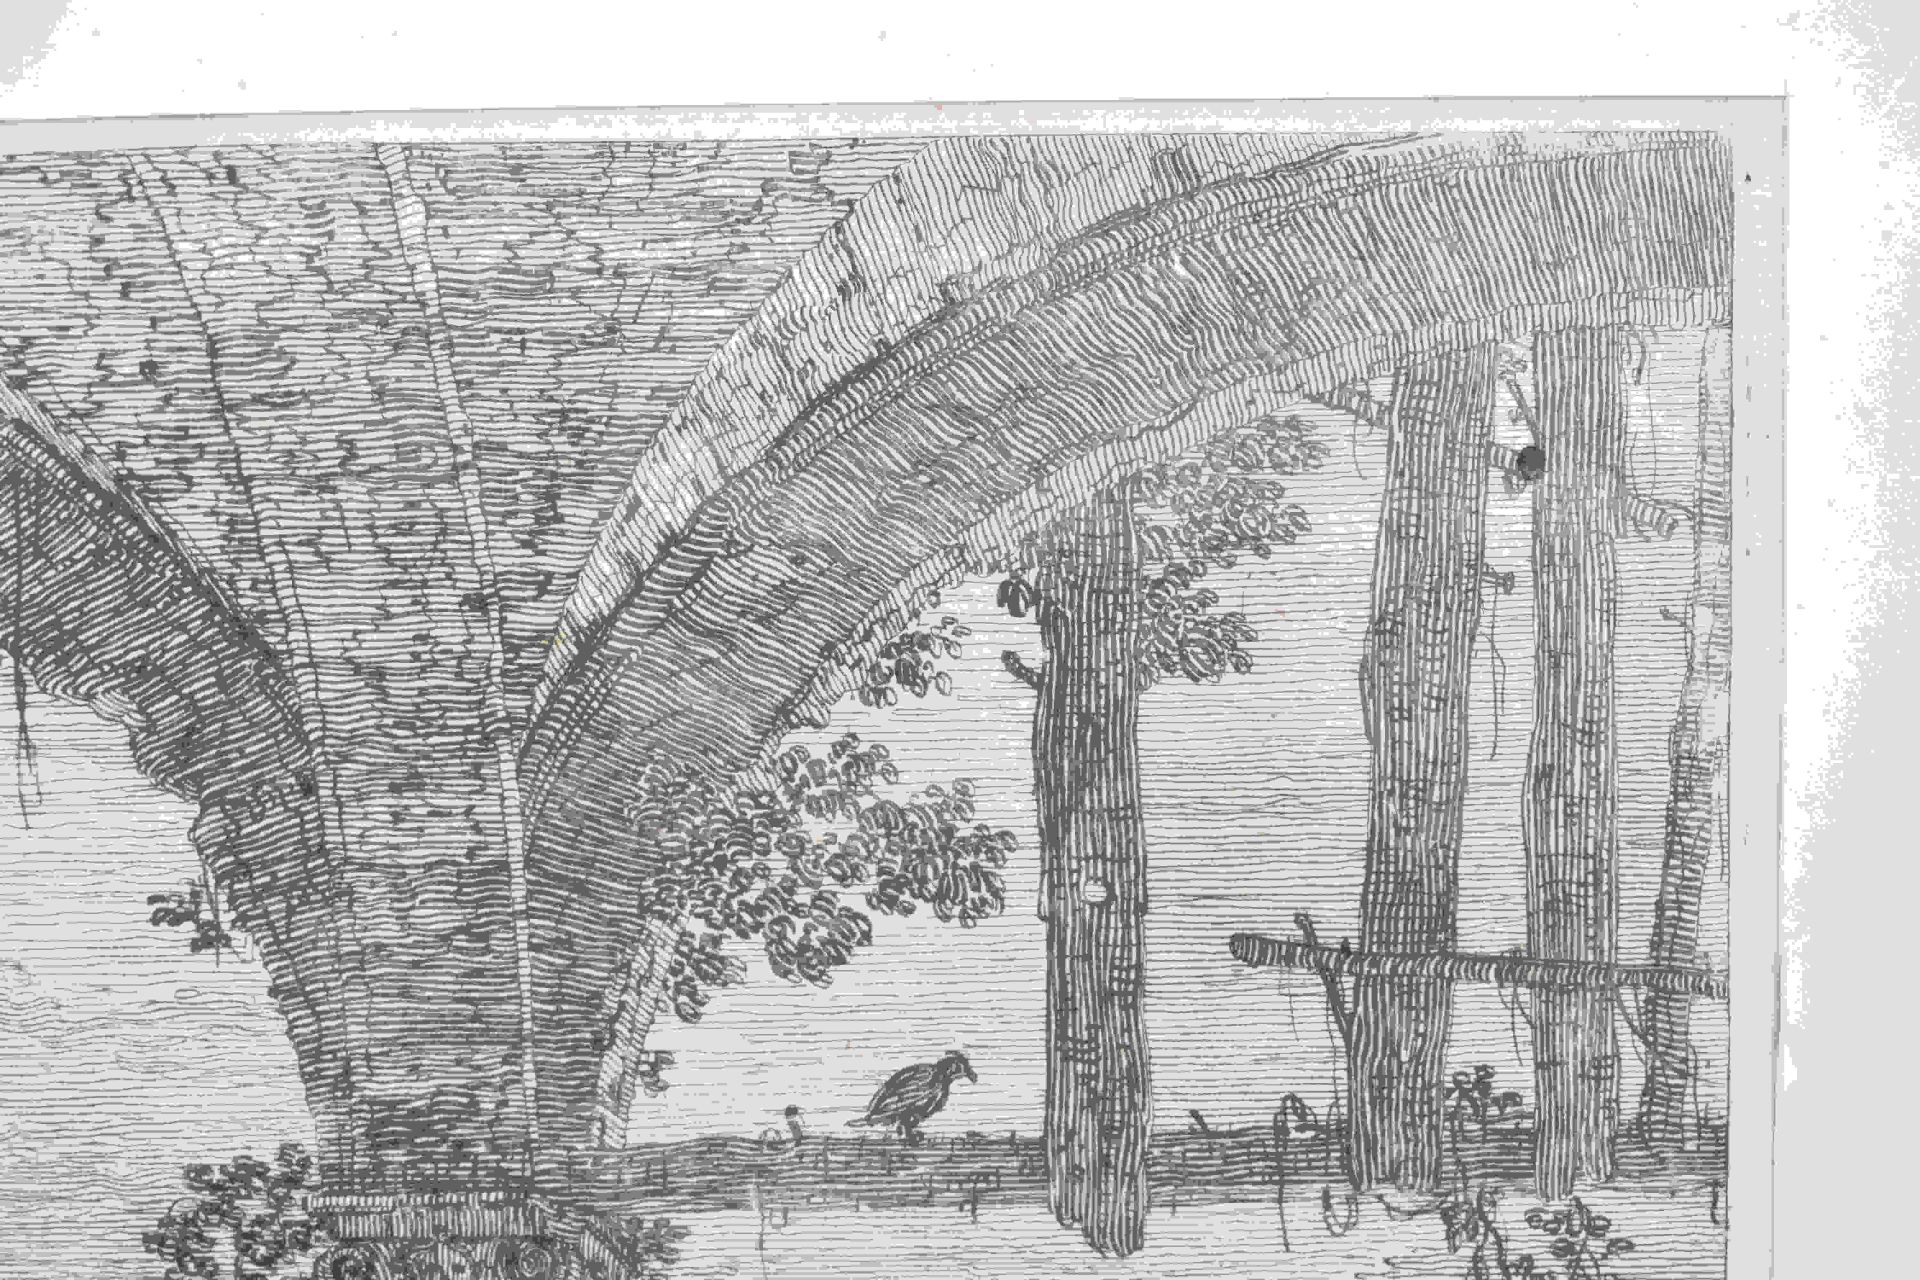 Canal, Giovanni Antonio, gen. Canaletto: Il portico con la lanterna - Image 6 of 24